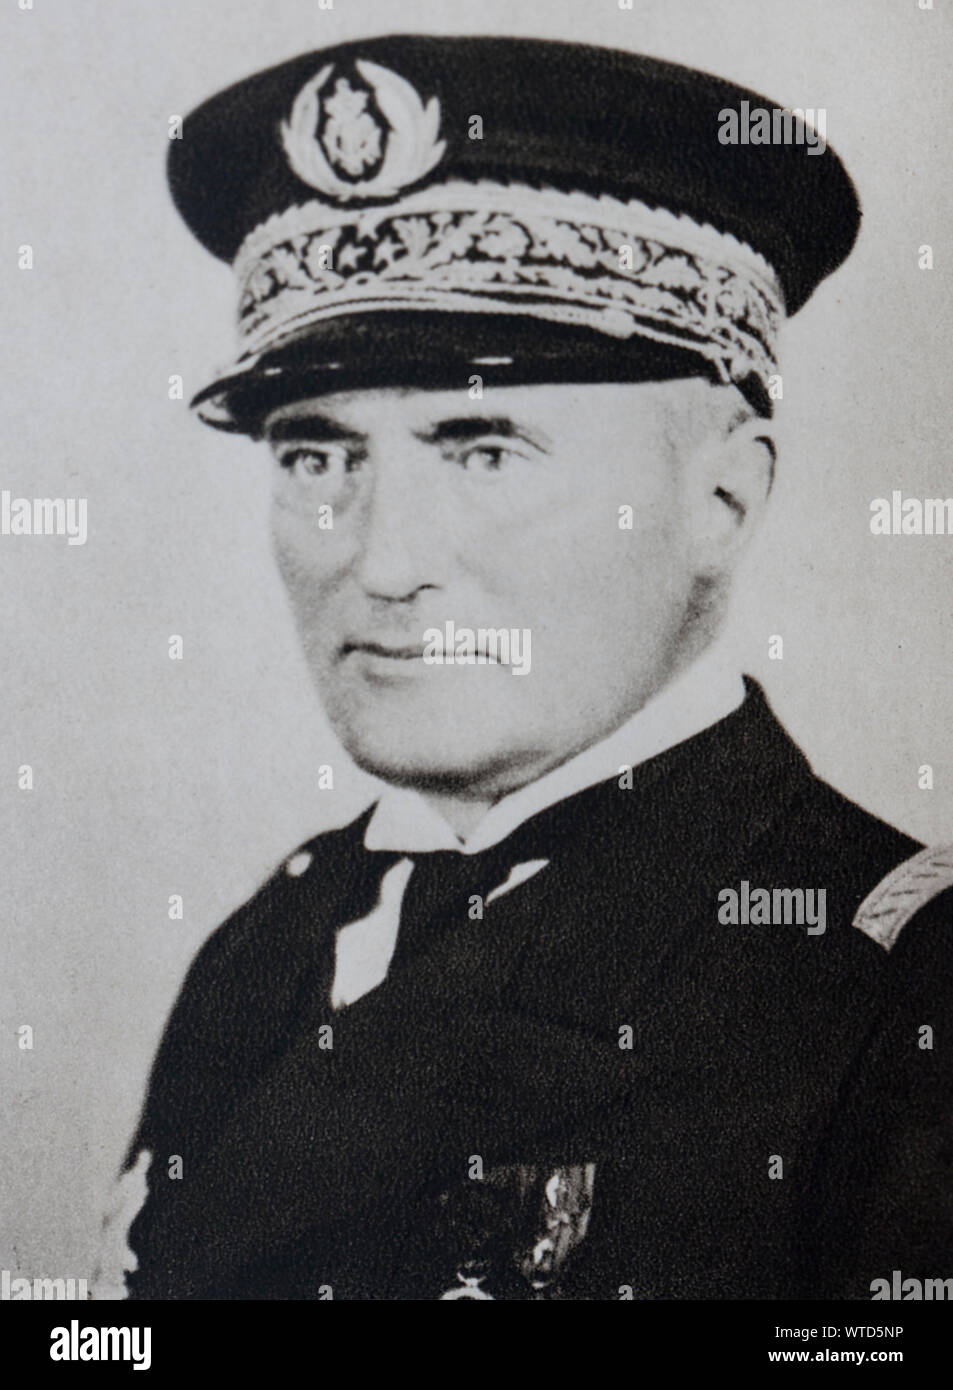 L'amiral Darlan, qui était à la recherche de passage au camp d'allie lorsqu'il a été assassiné le 24 décembre 1942. Banque D'Images